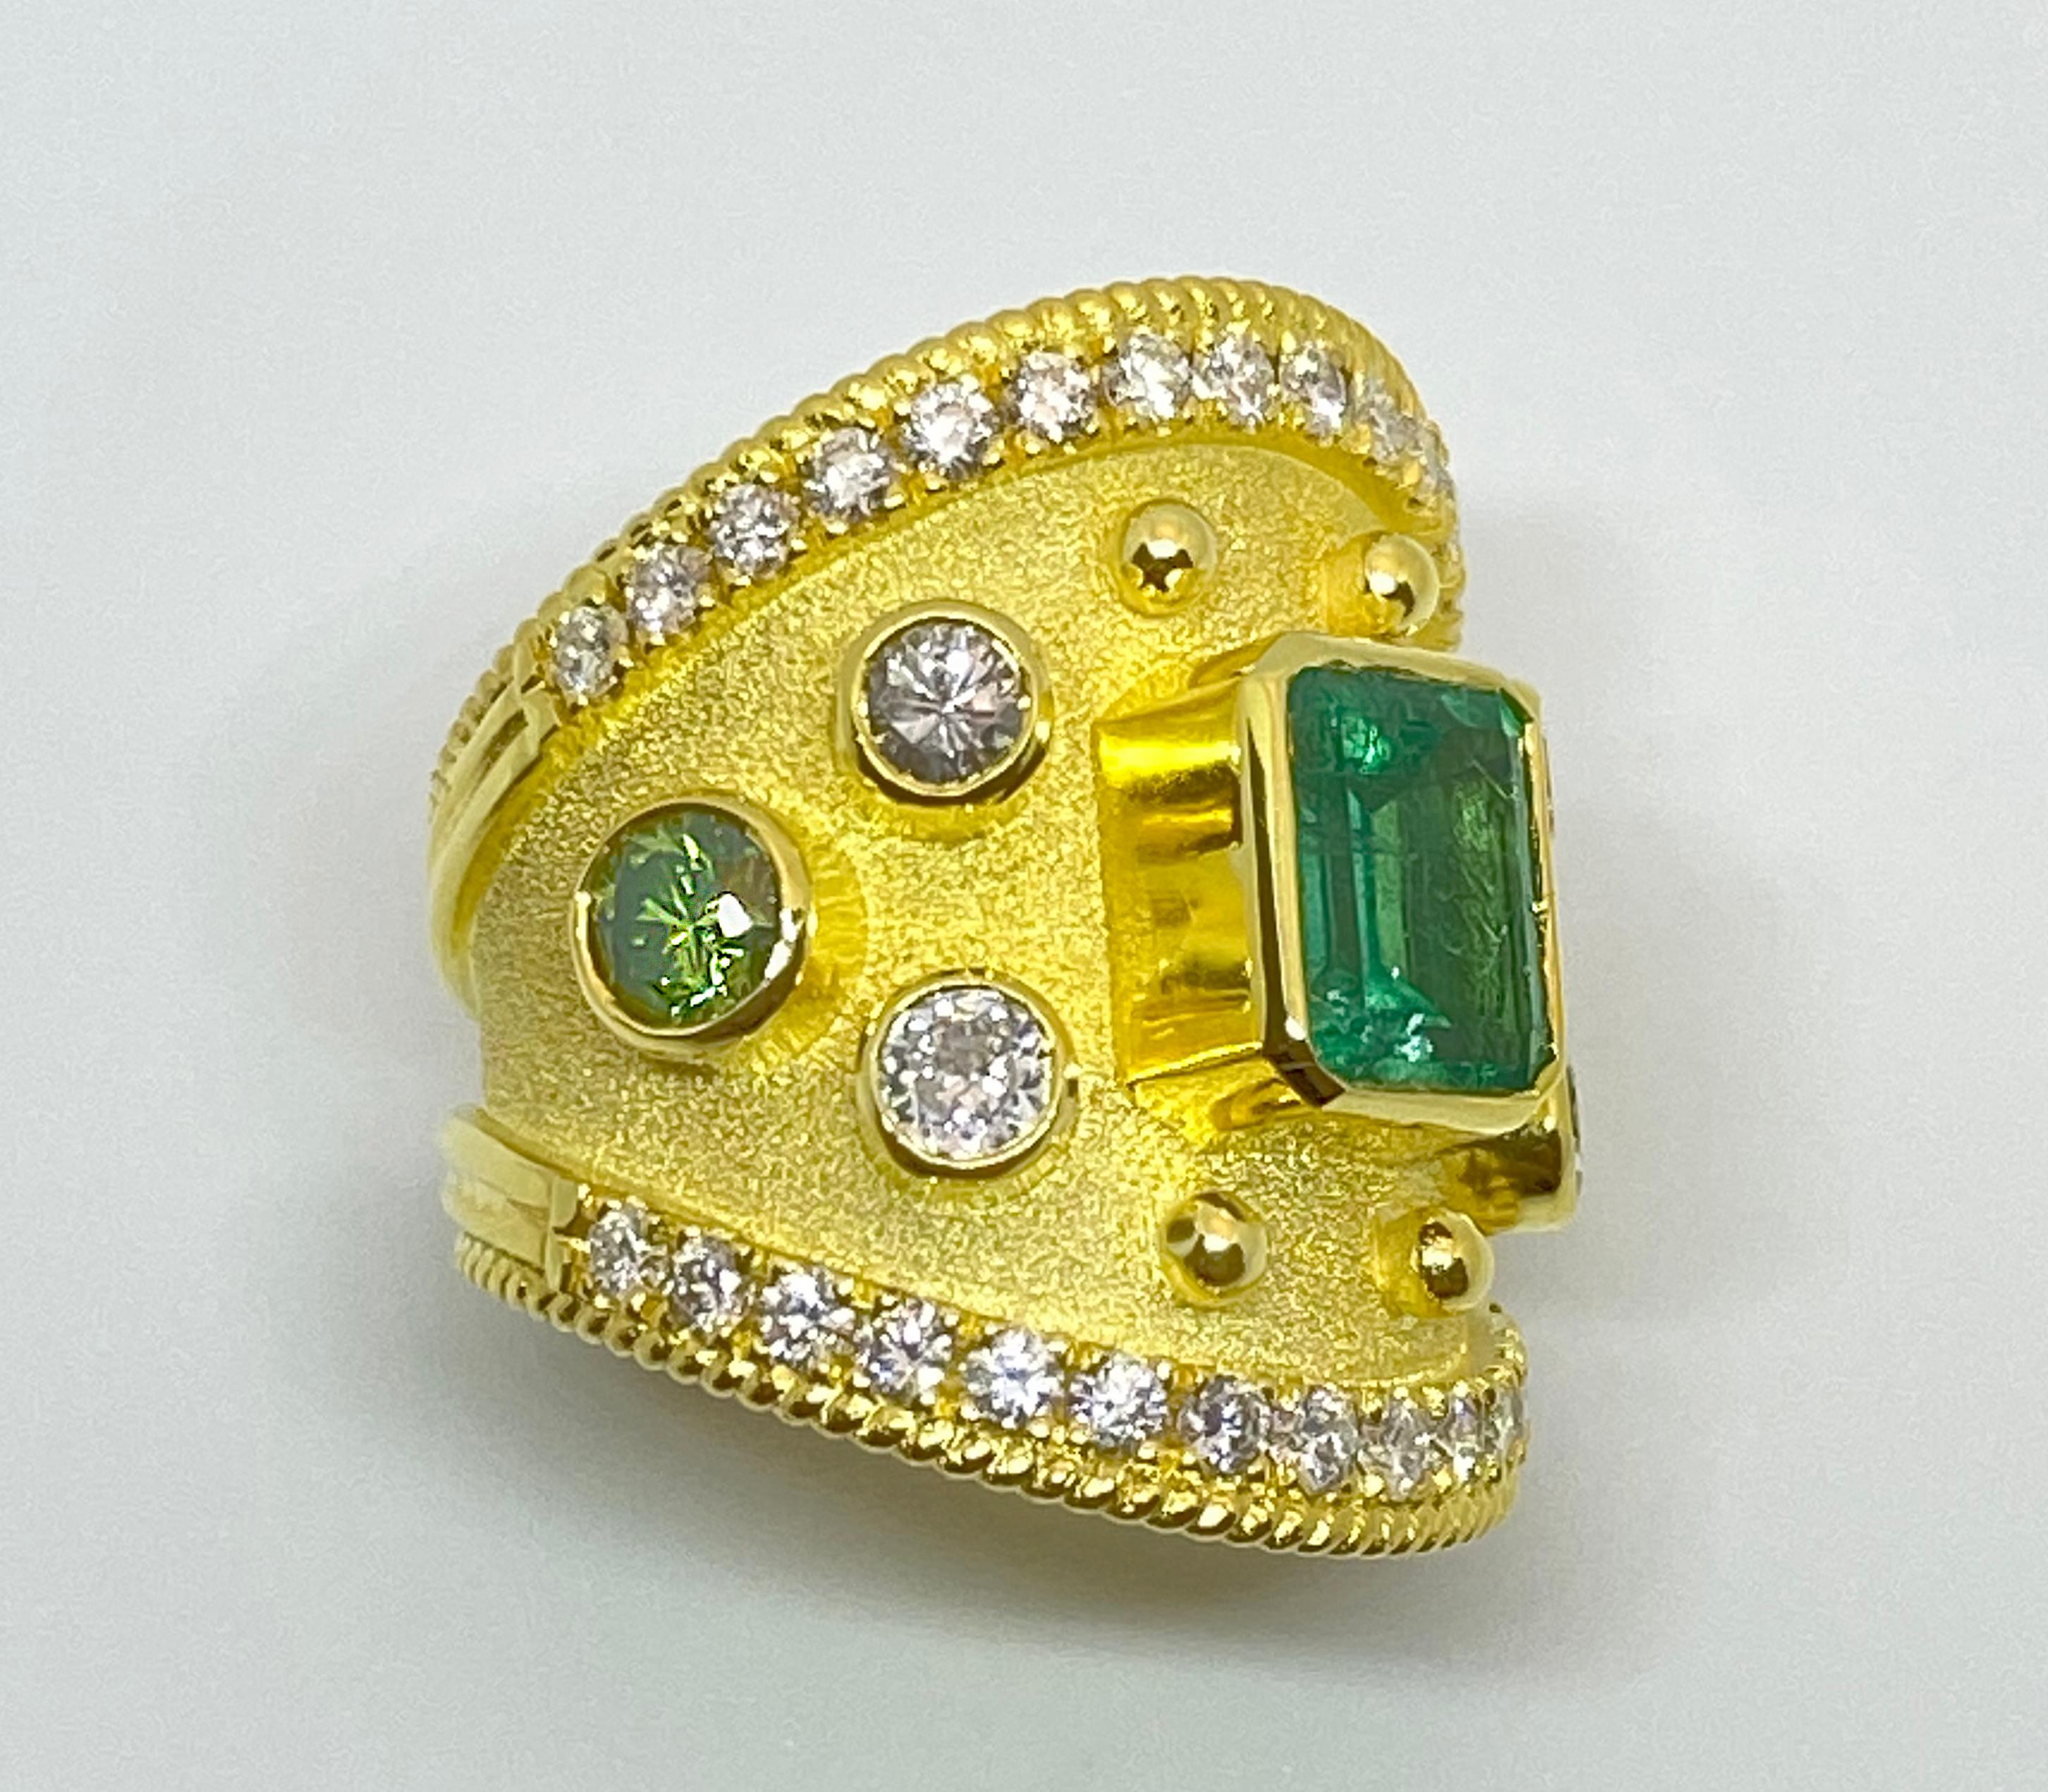 Dieser S.Georgios Designer 18 Karat Gelbgold Band Ring ist alle handgefertigt mit einem byzantinischen Granulation Workmanship und einem einzigartigen Samt Hintergrund. Dieses wunderschöne Band hat in der Mitte einen natürlichen Smaragd im